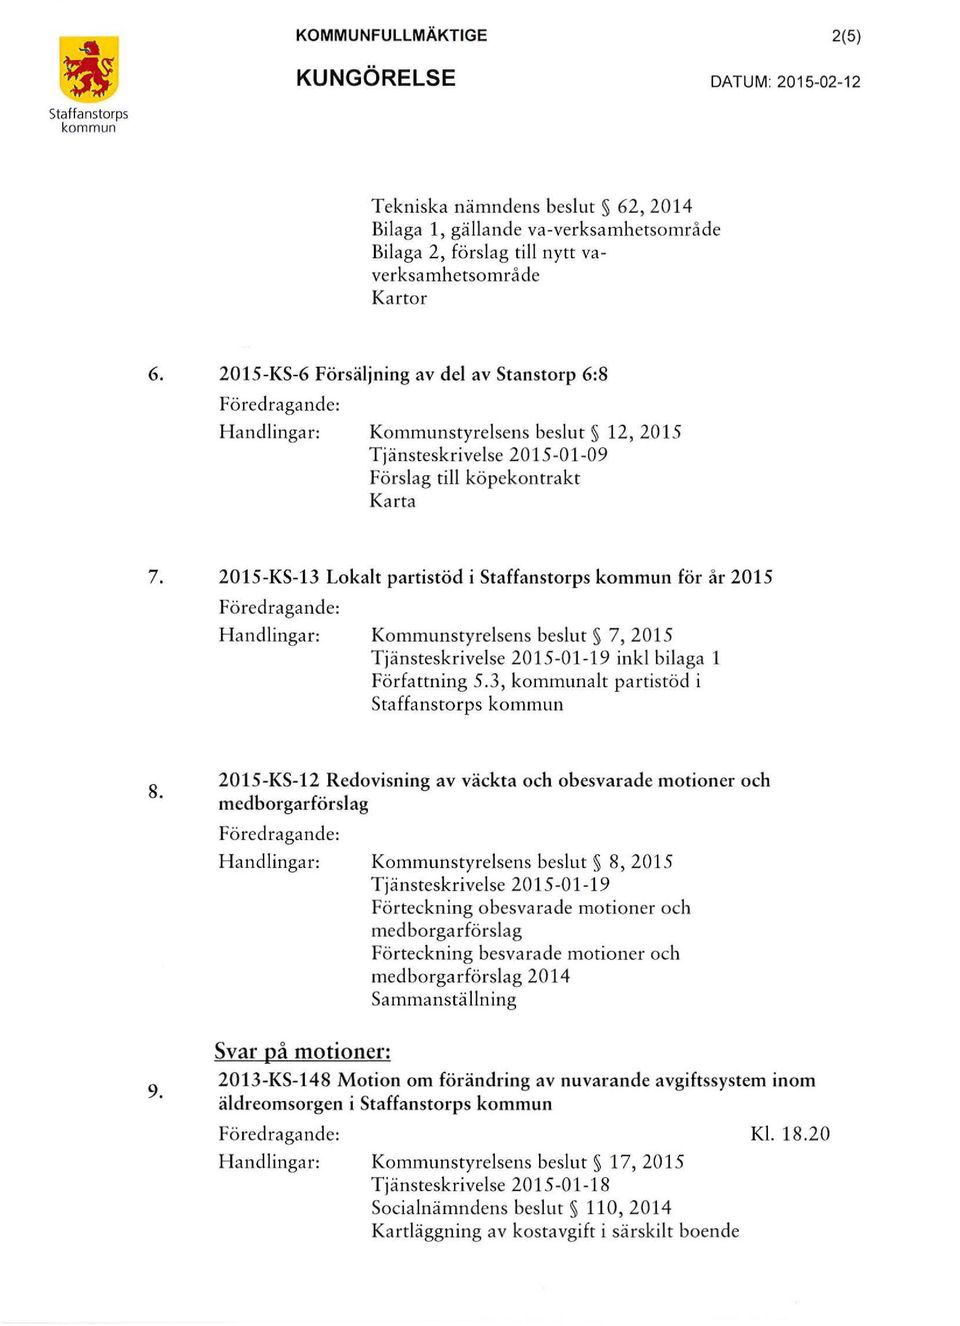 2015-KS-13 Lokalt partistöd i Staffanstorps kommun för år 2015 Föredragande: Handlingar: Kommunstyrelsens beslut 7, 2015 Tjänsteskrivelse 2015-01-19 ink! bilaga l Författning 5.